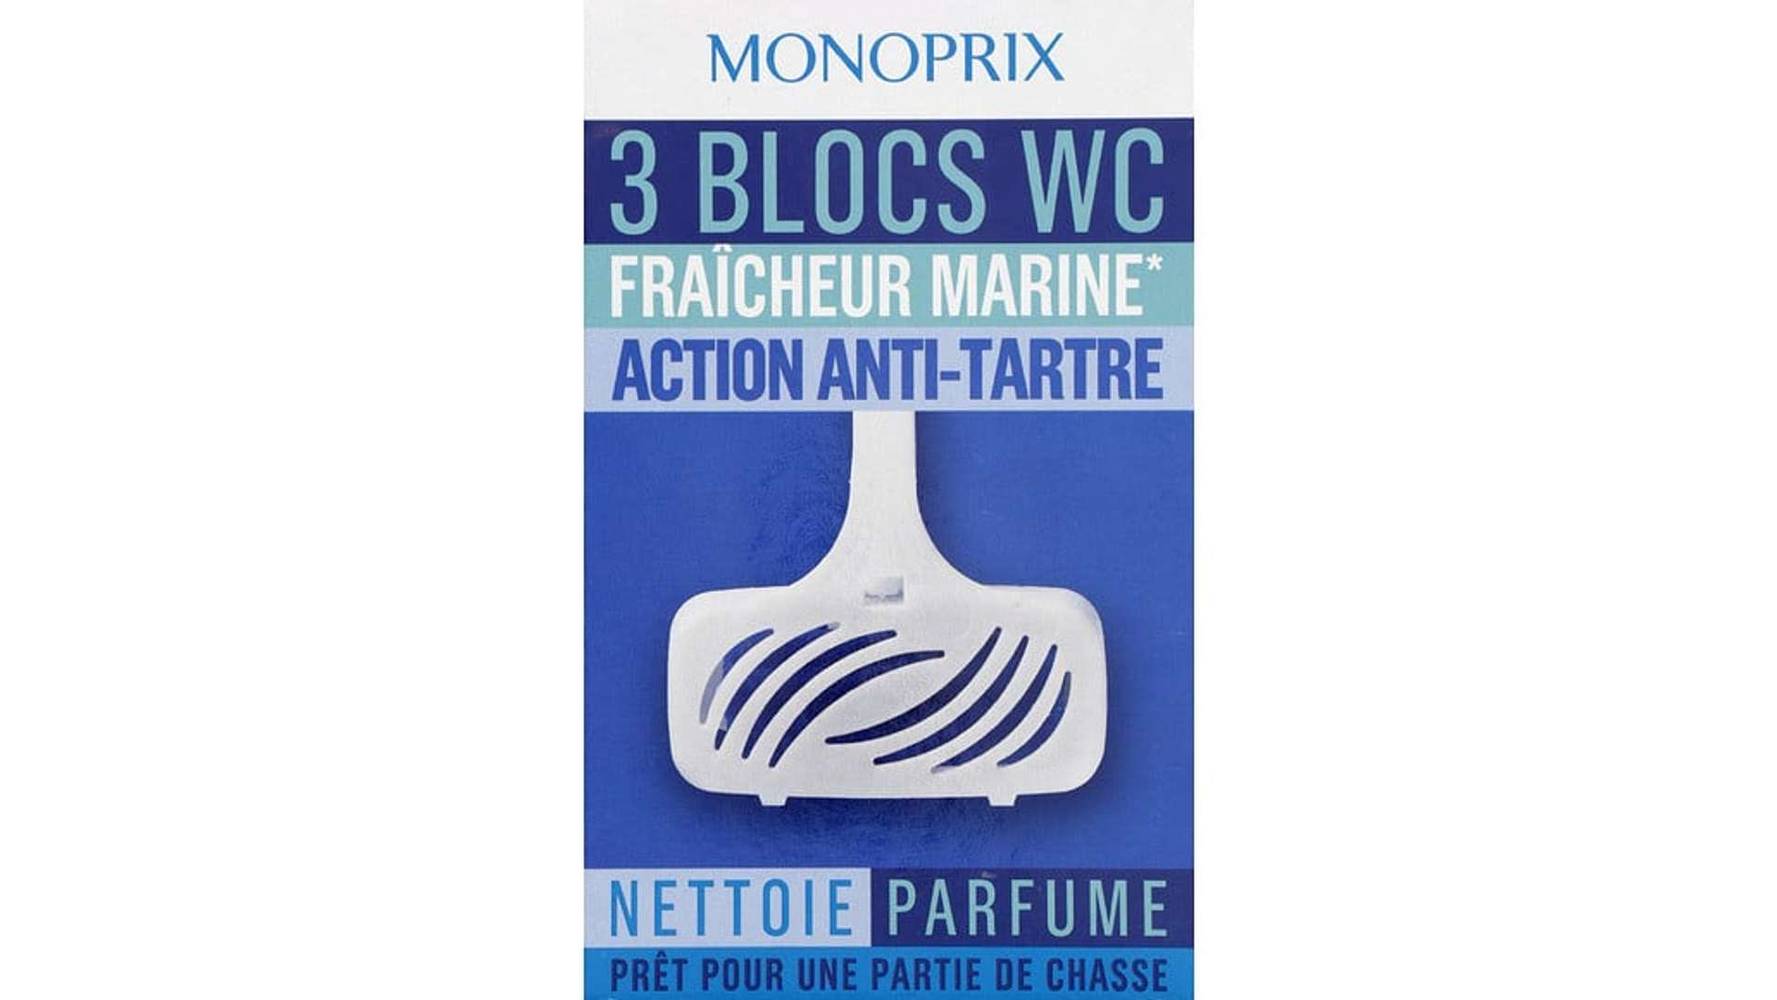 Monoprix Blocs WC fraîcheur marine action anti-tartre Les 3 blocs de 38g